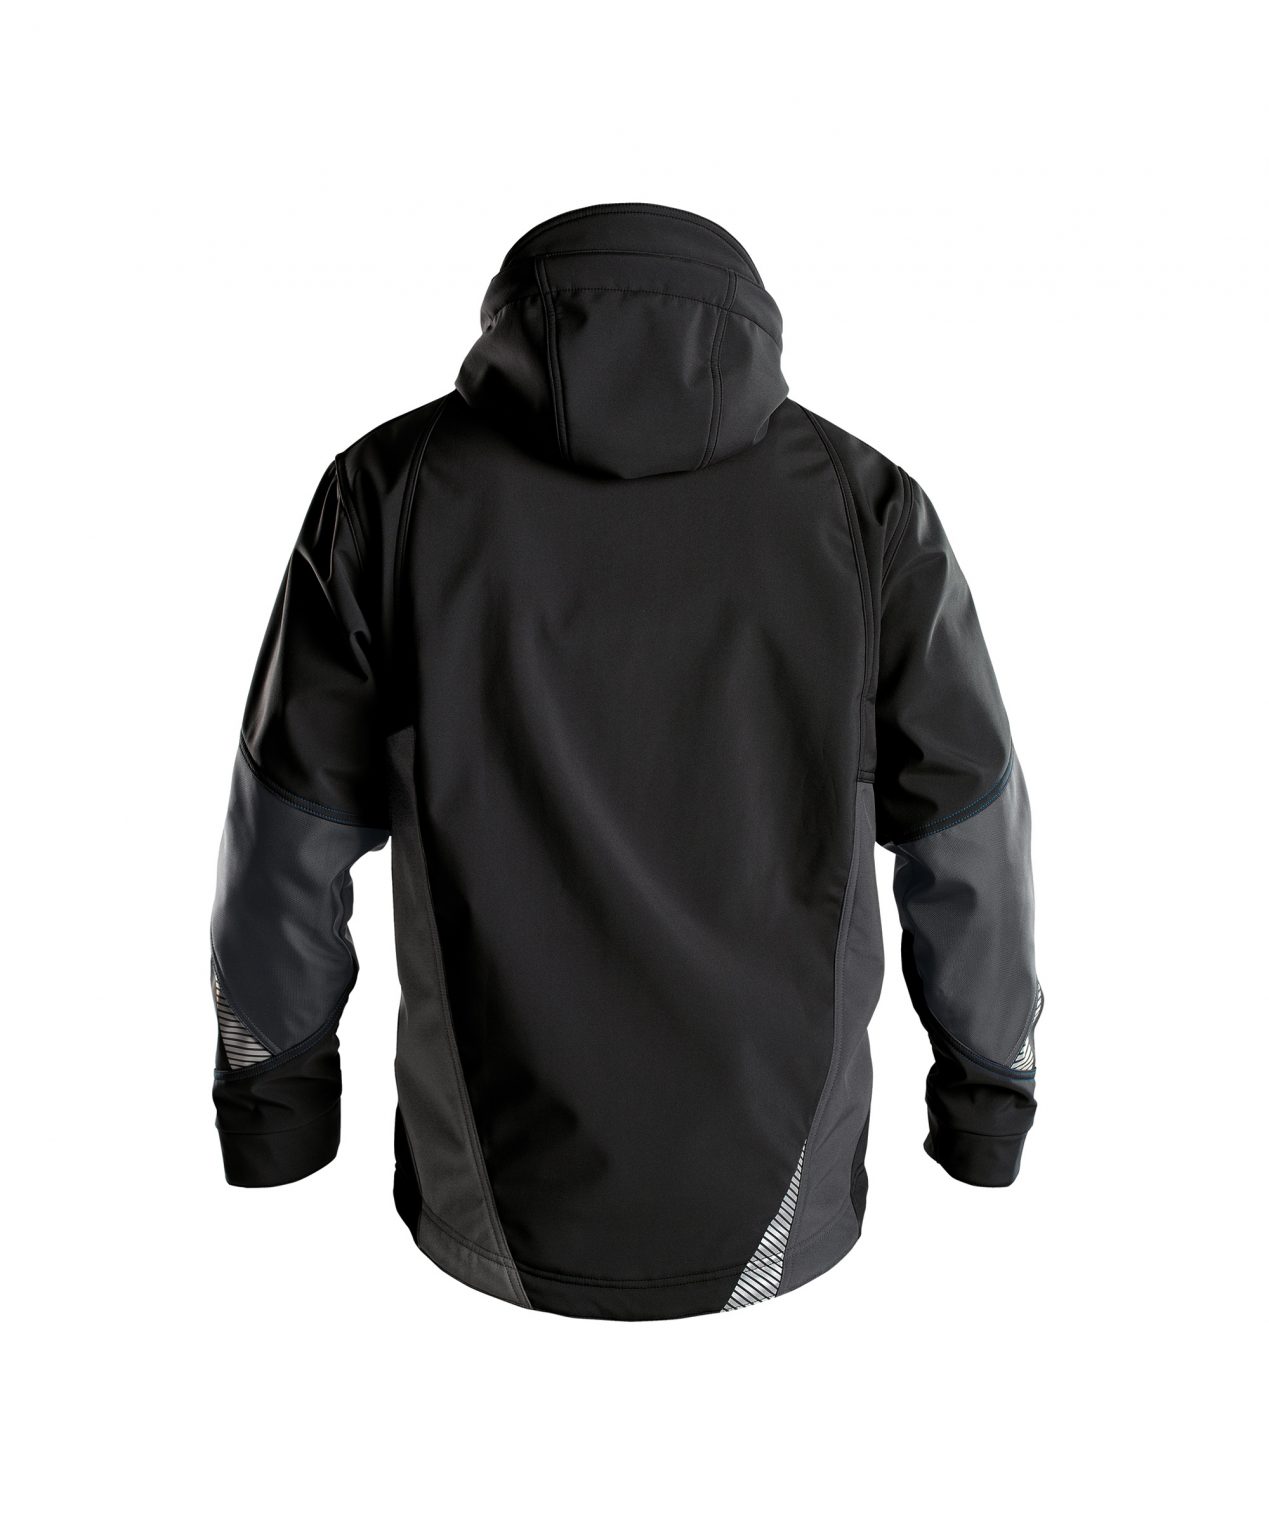 gravity softshell jacket black anthracite grey back